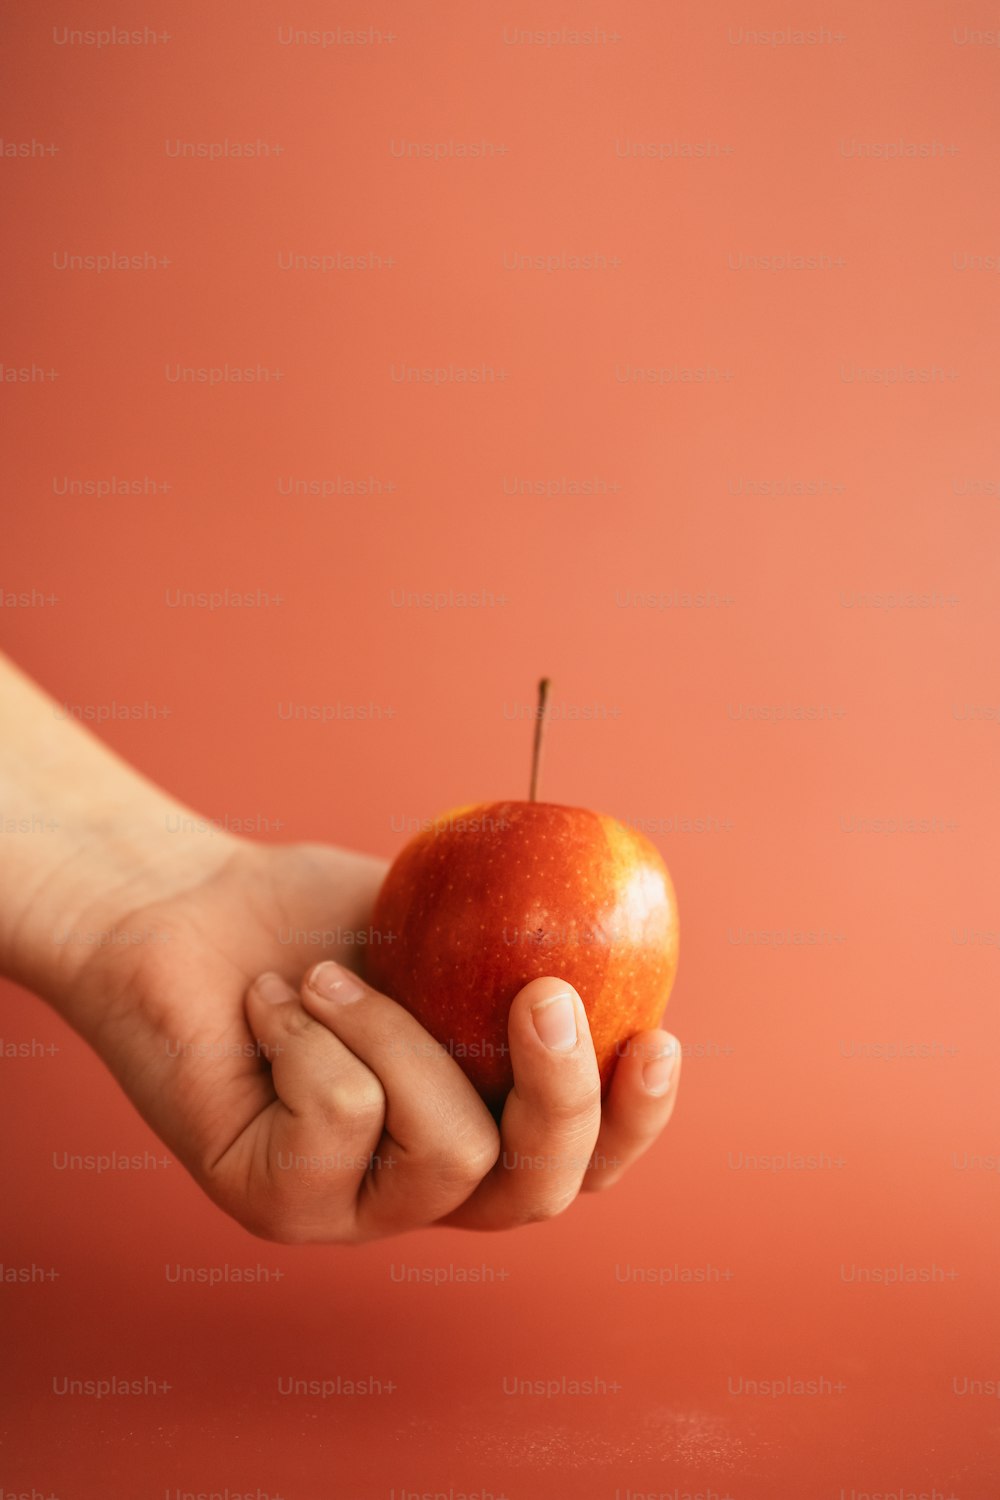 Una persona sosteniendo una manzana en la mano